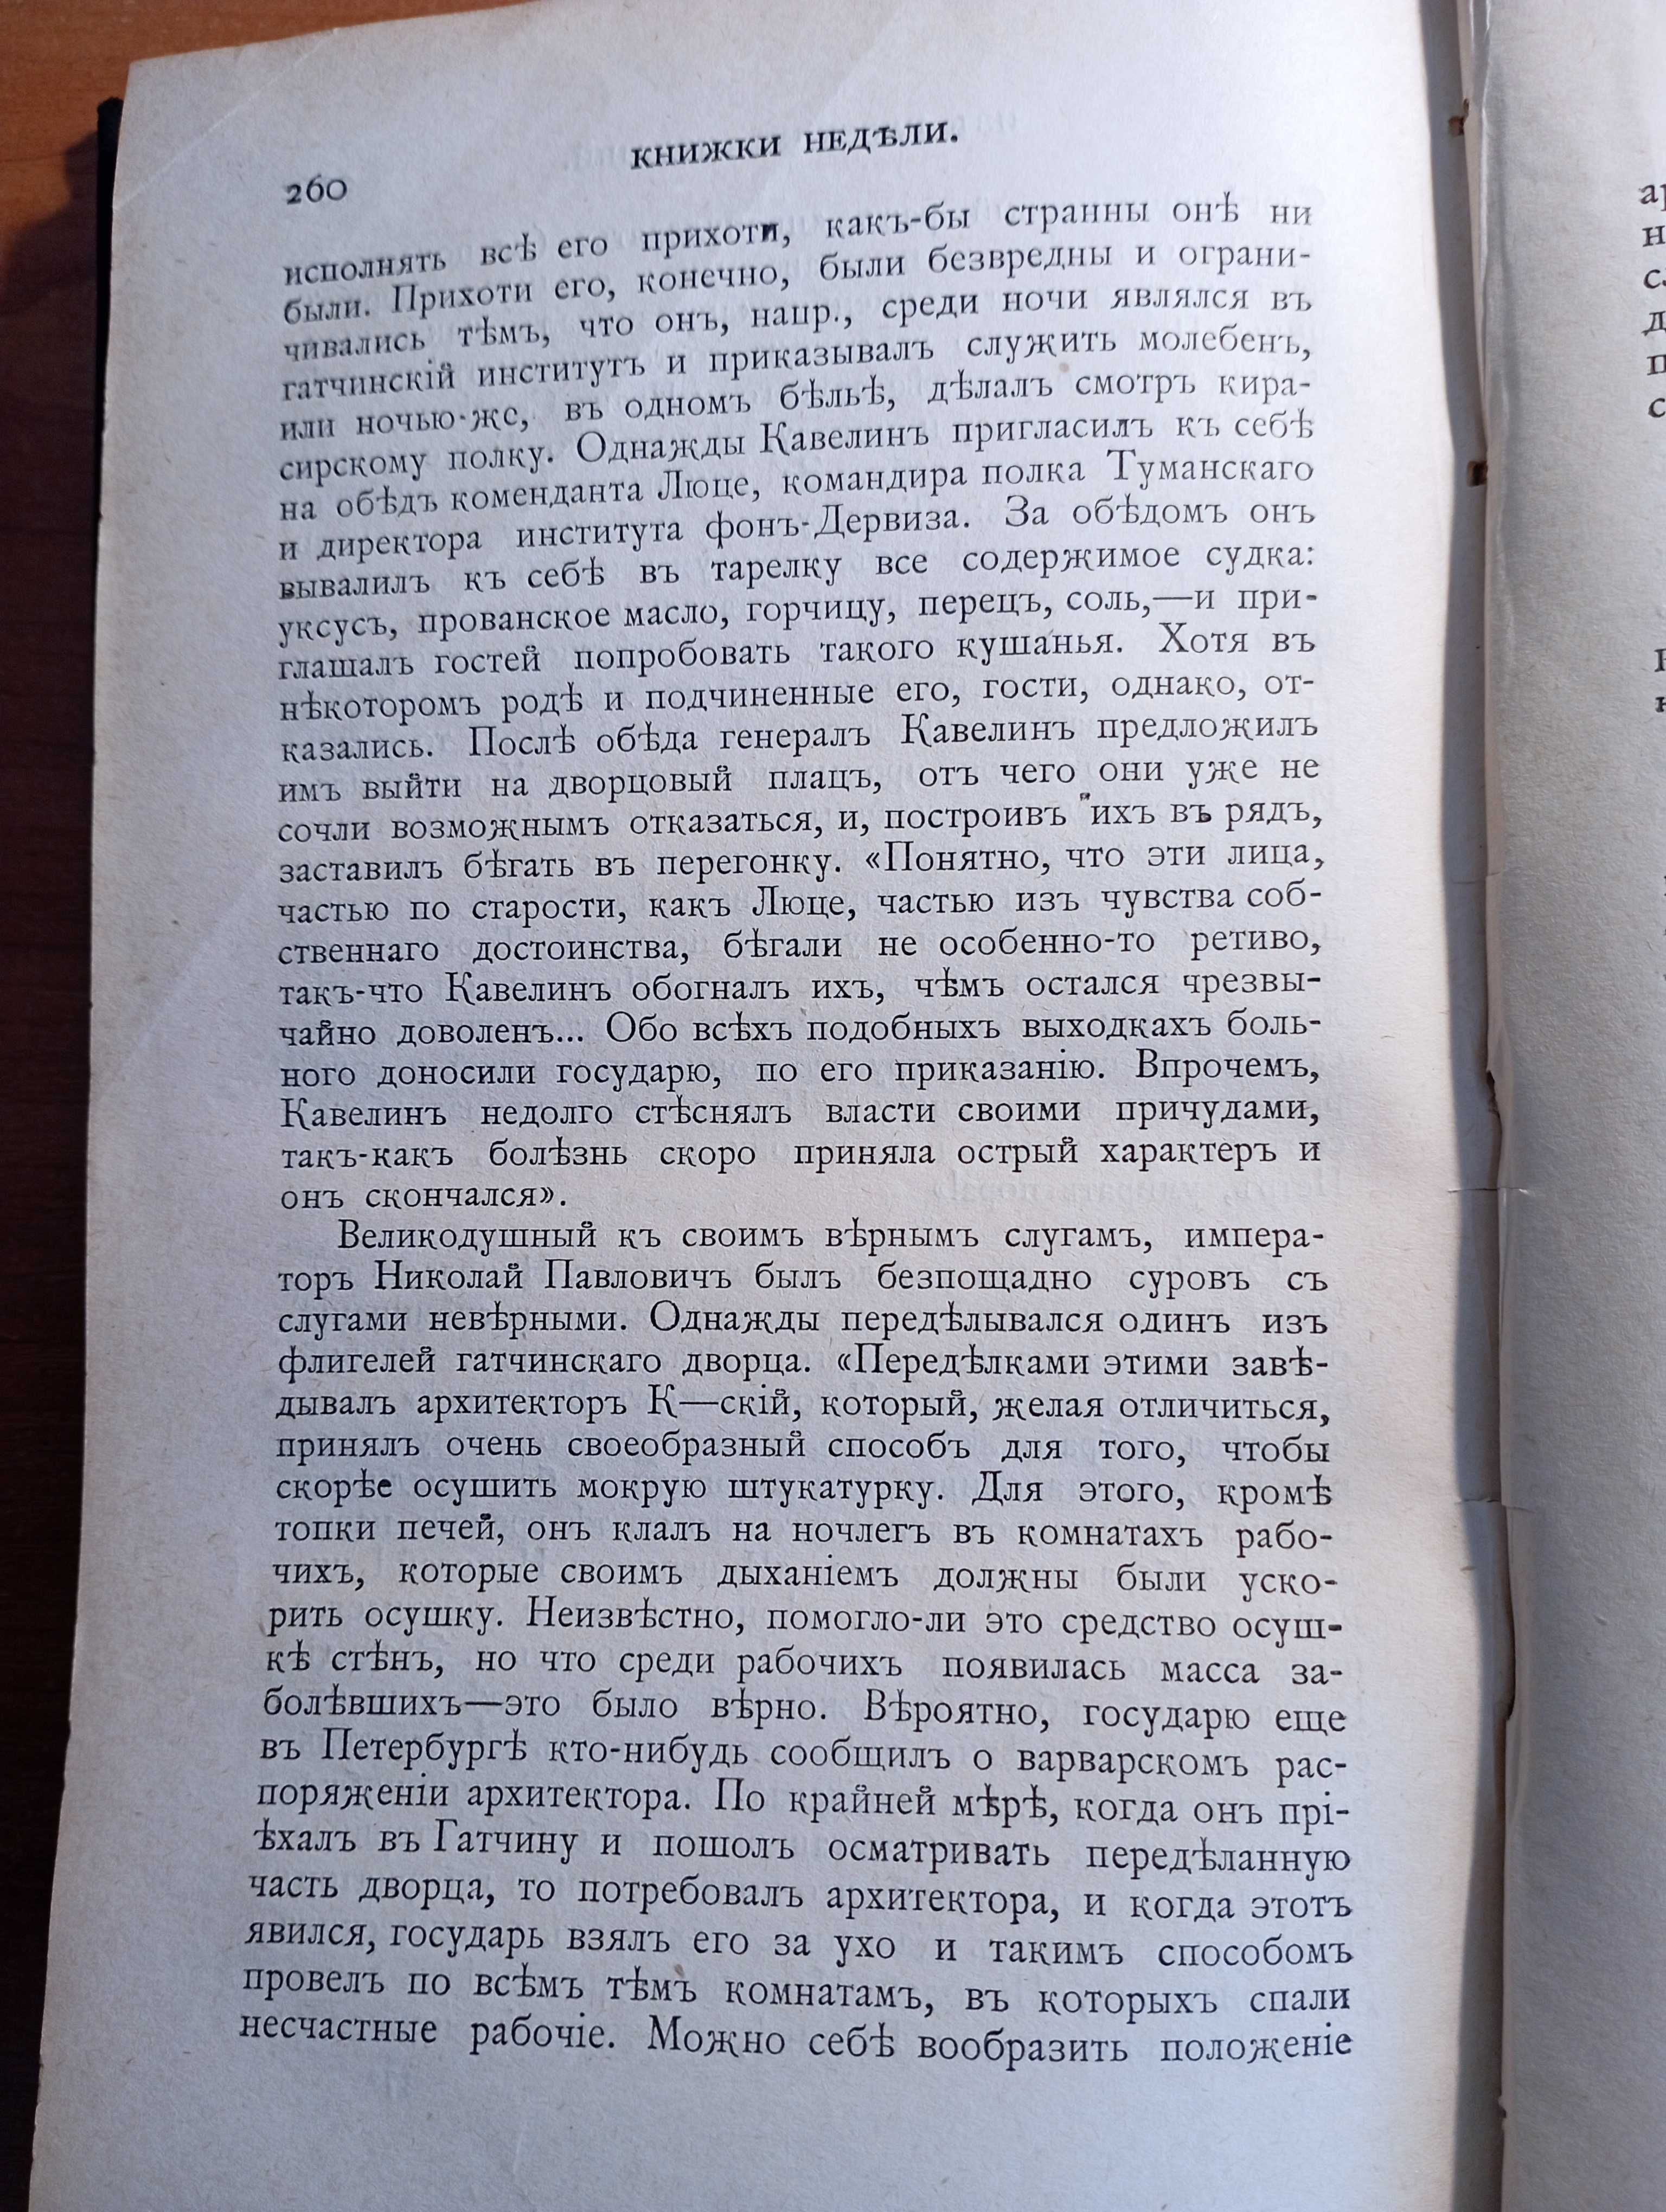 "Книжки недели", Ежемесячный литературный журнал, Август 1896!